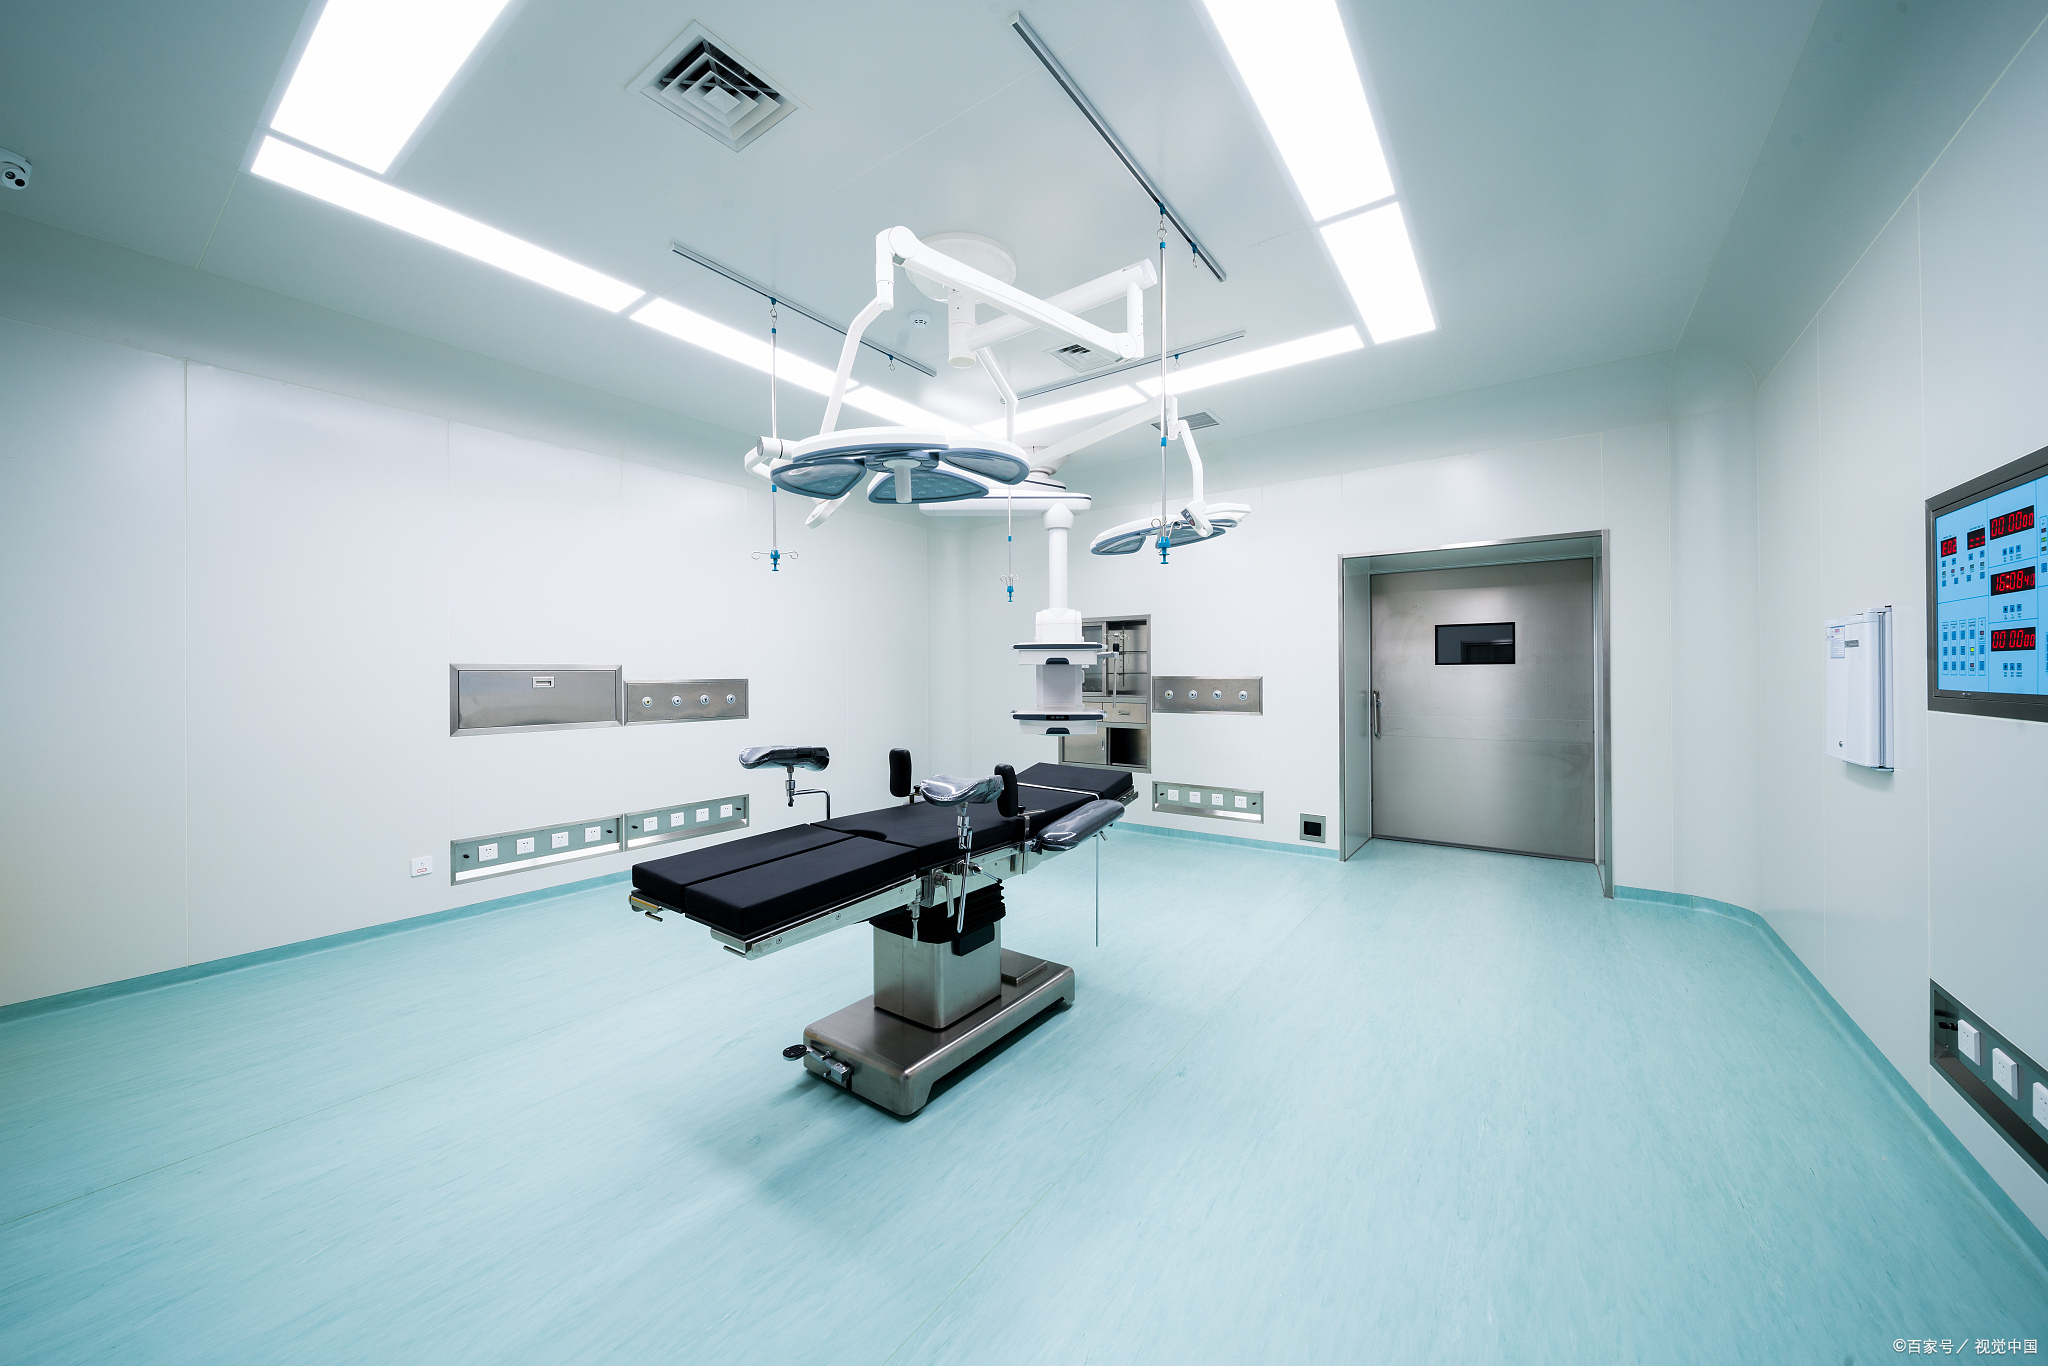 万级层流手术室与百级净化手术室有哪些具体区别插图